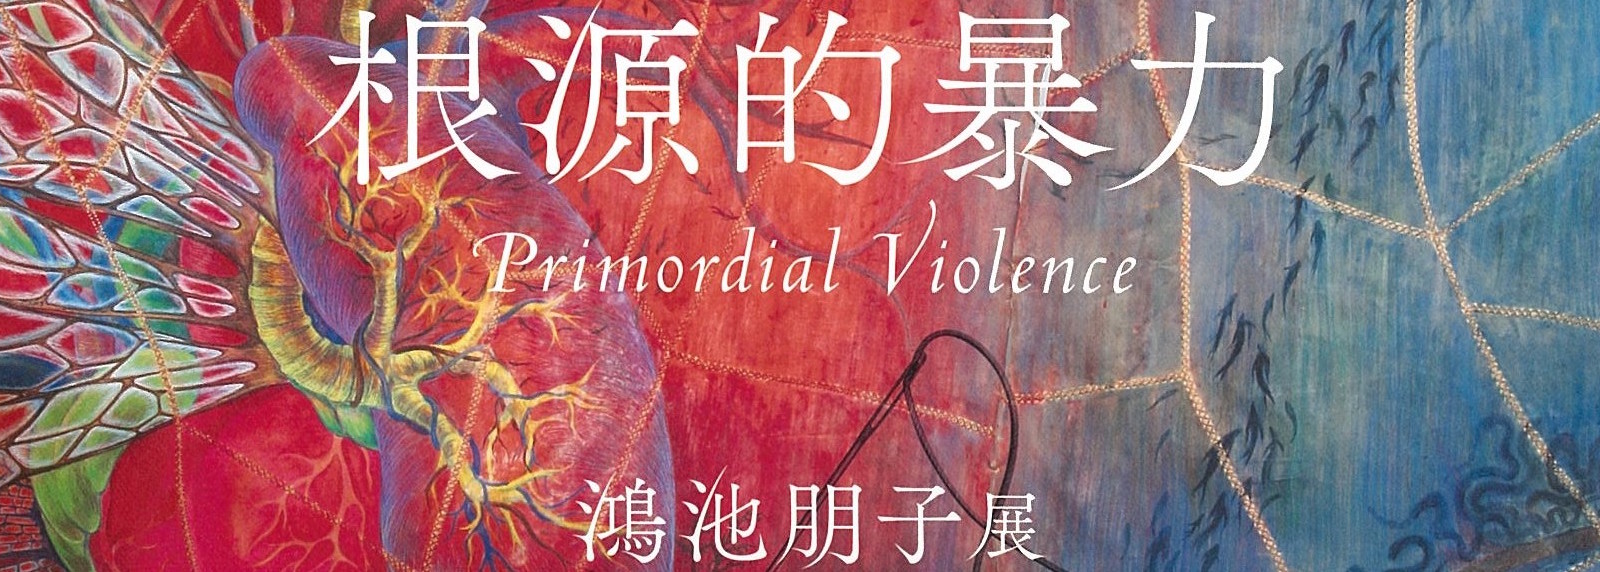 アートの捉え方を揺るがす作品！ 鴻池朋子展「根源的暴力」＠神奈川県民ホールギャラリー